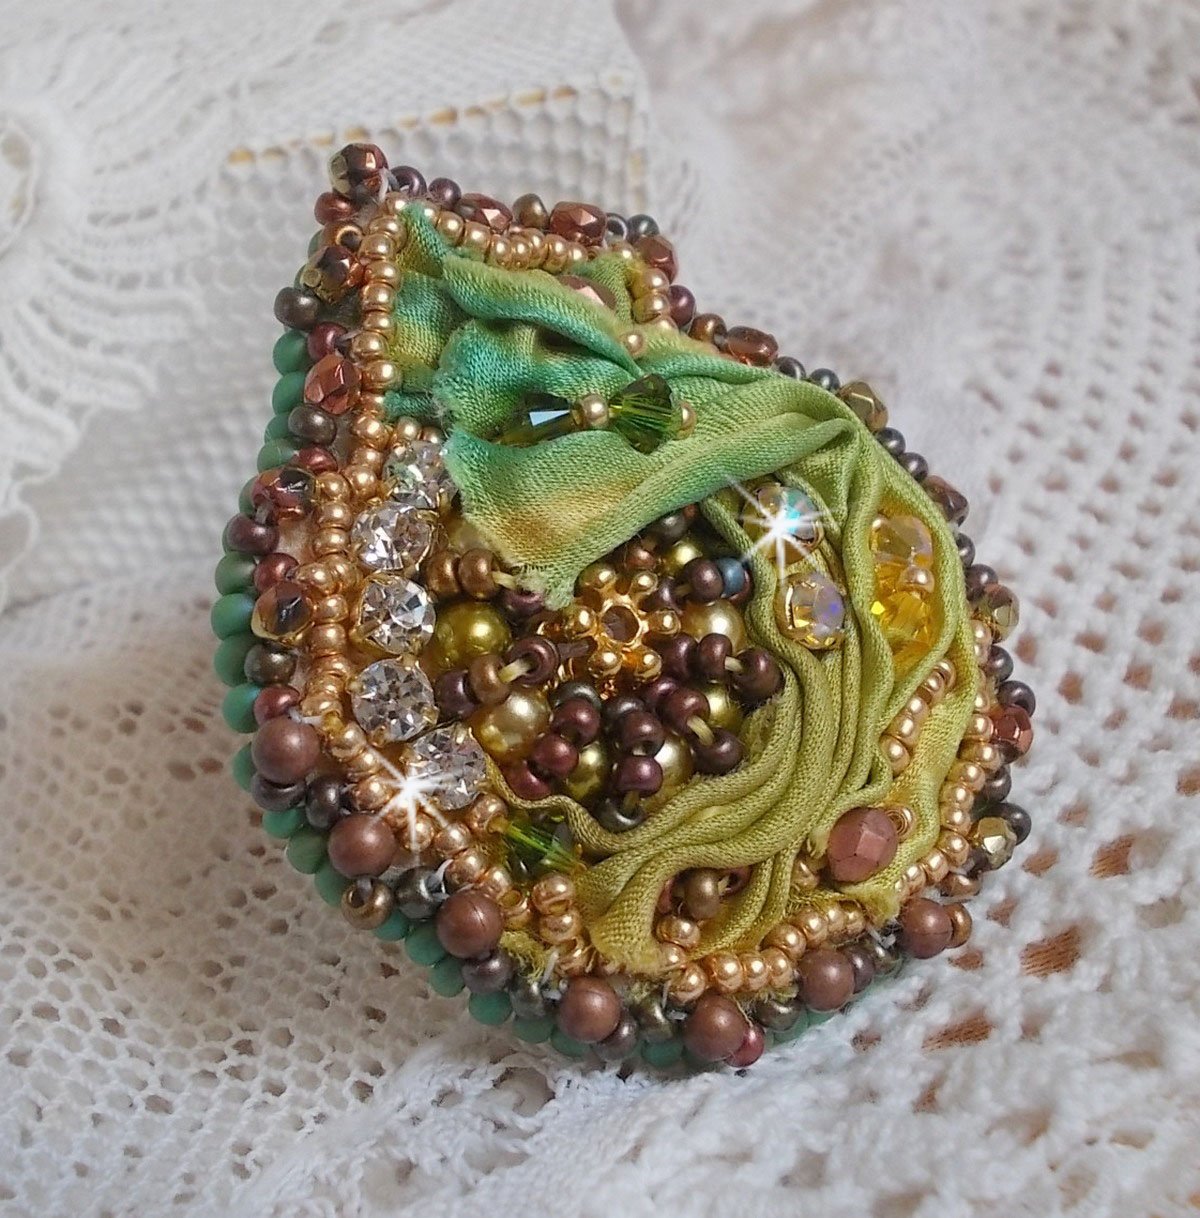 Bague Lune Vénitienne brodée avec un ruban de soie Orange, Vert et Jaune, cristaux : toupies, perles rondes nacrées et chatons. S’ajoute des facettes et rocailles en Verre sur une bague filigranée 